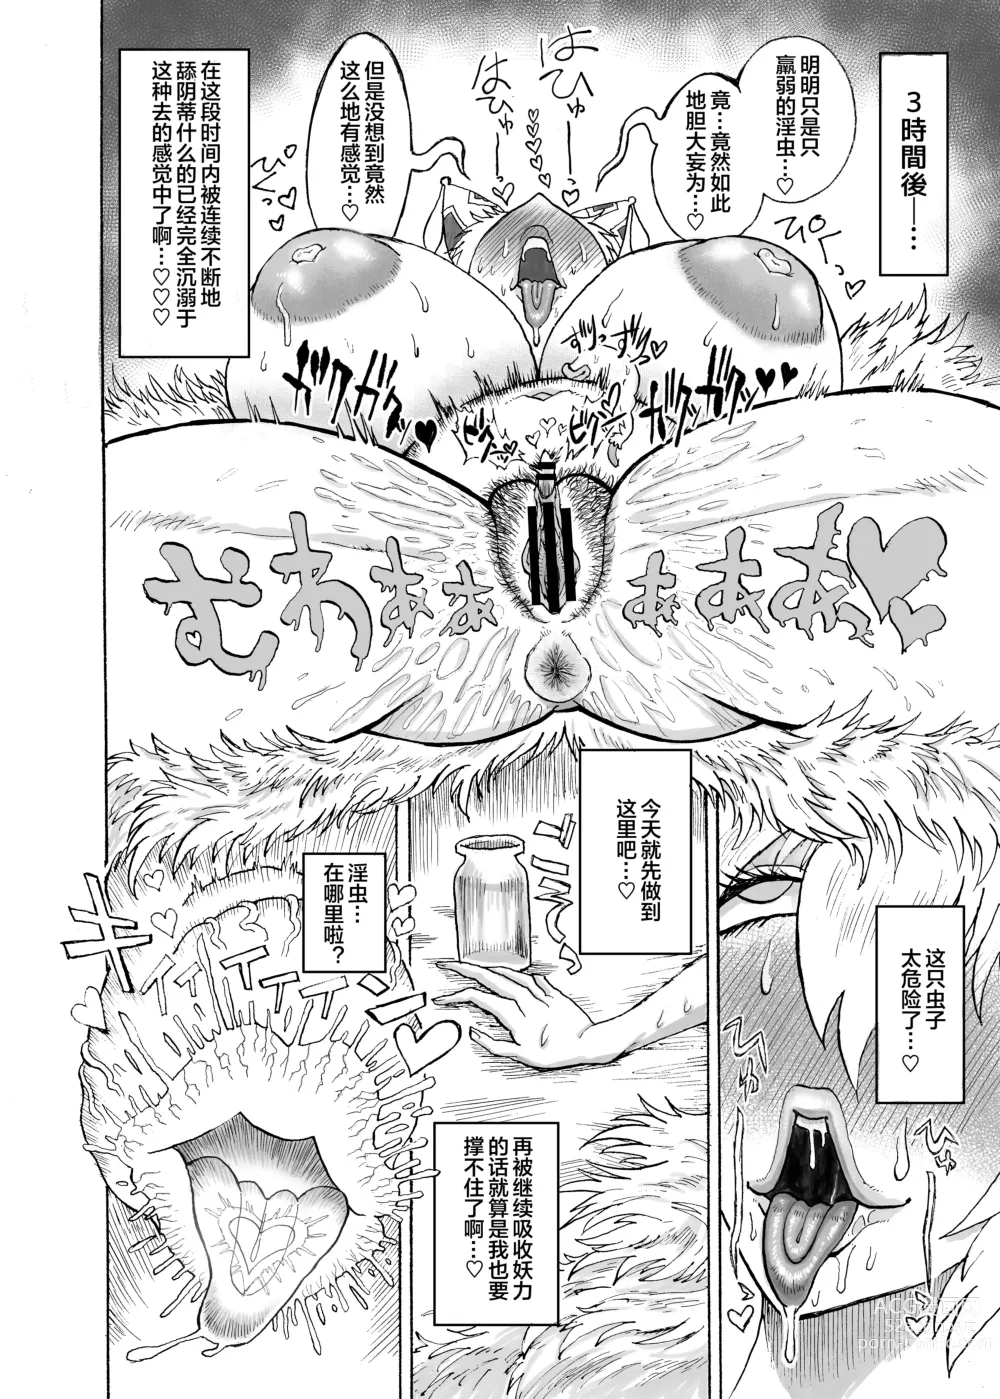 Page 7 of doujinshi Yakumo Ran VS Kyuusei Inchuu